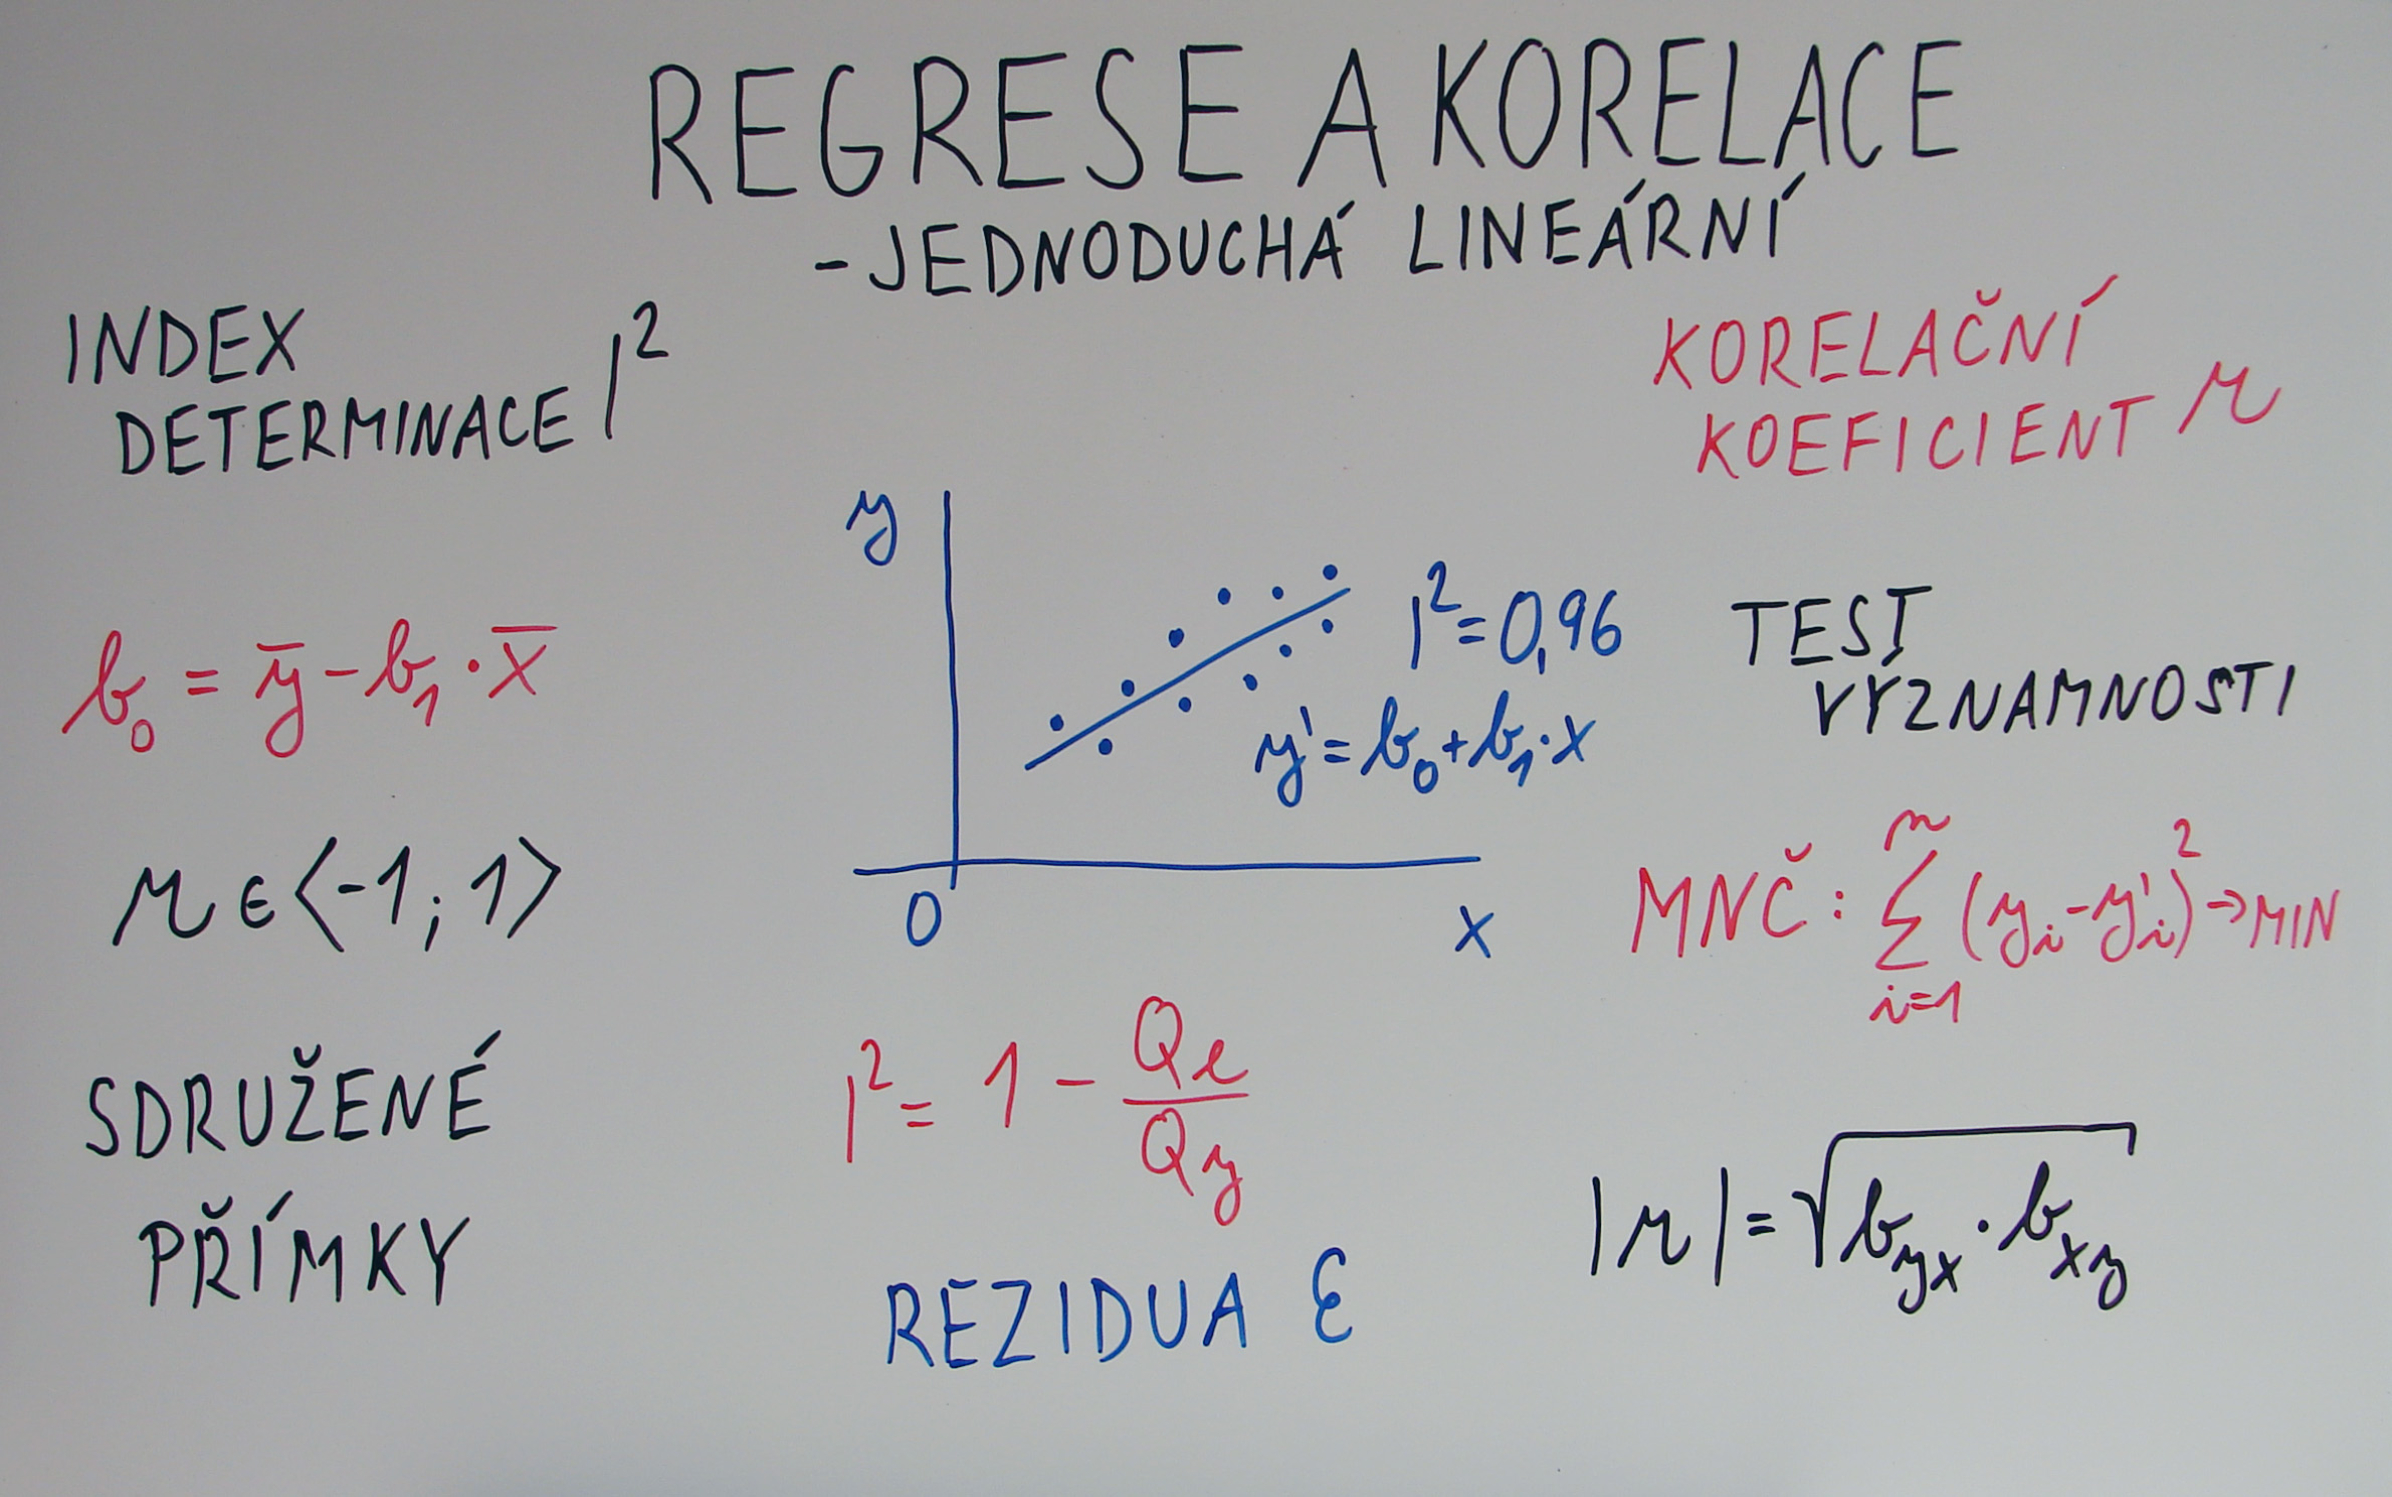 Doučování - statistika-obecně/regrese-korelace/jednoducha-lineární